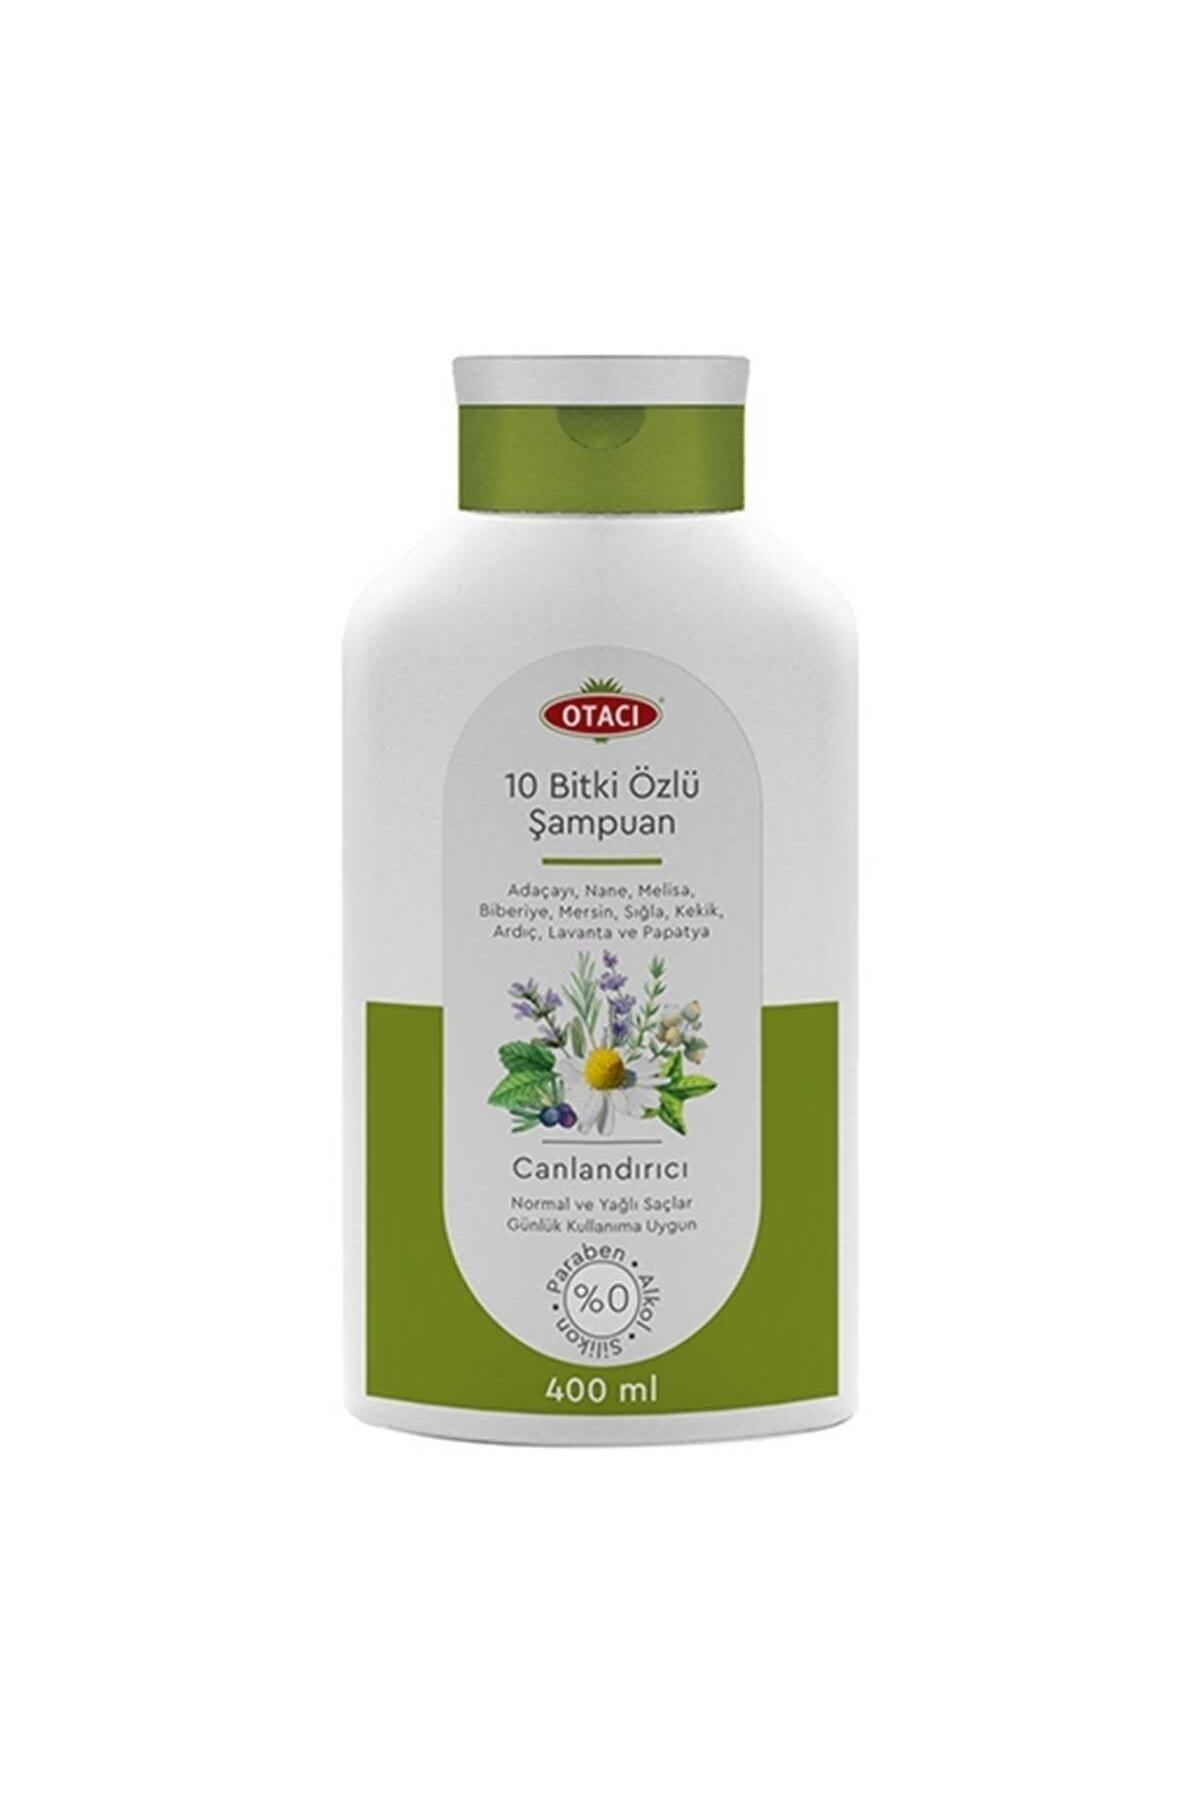 Otacı Ten Herbal Shampoo 400 ml Naturals26